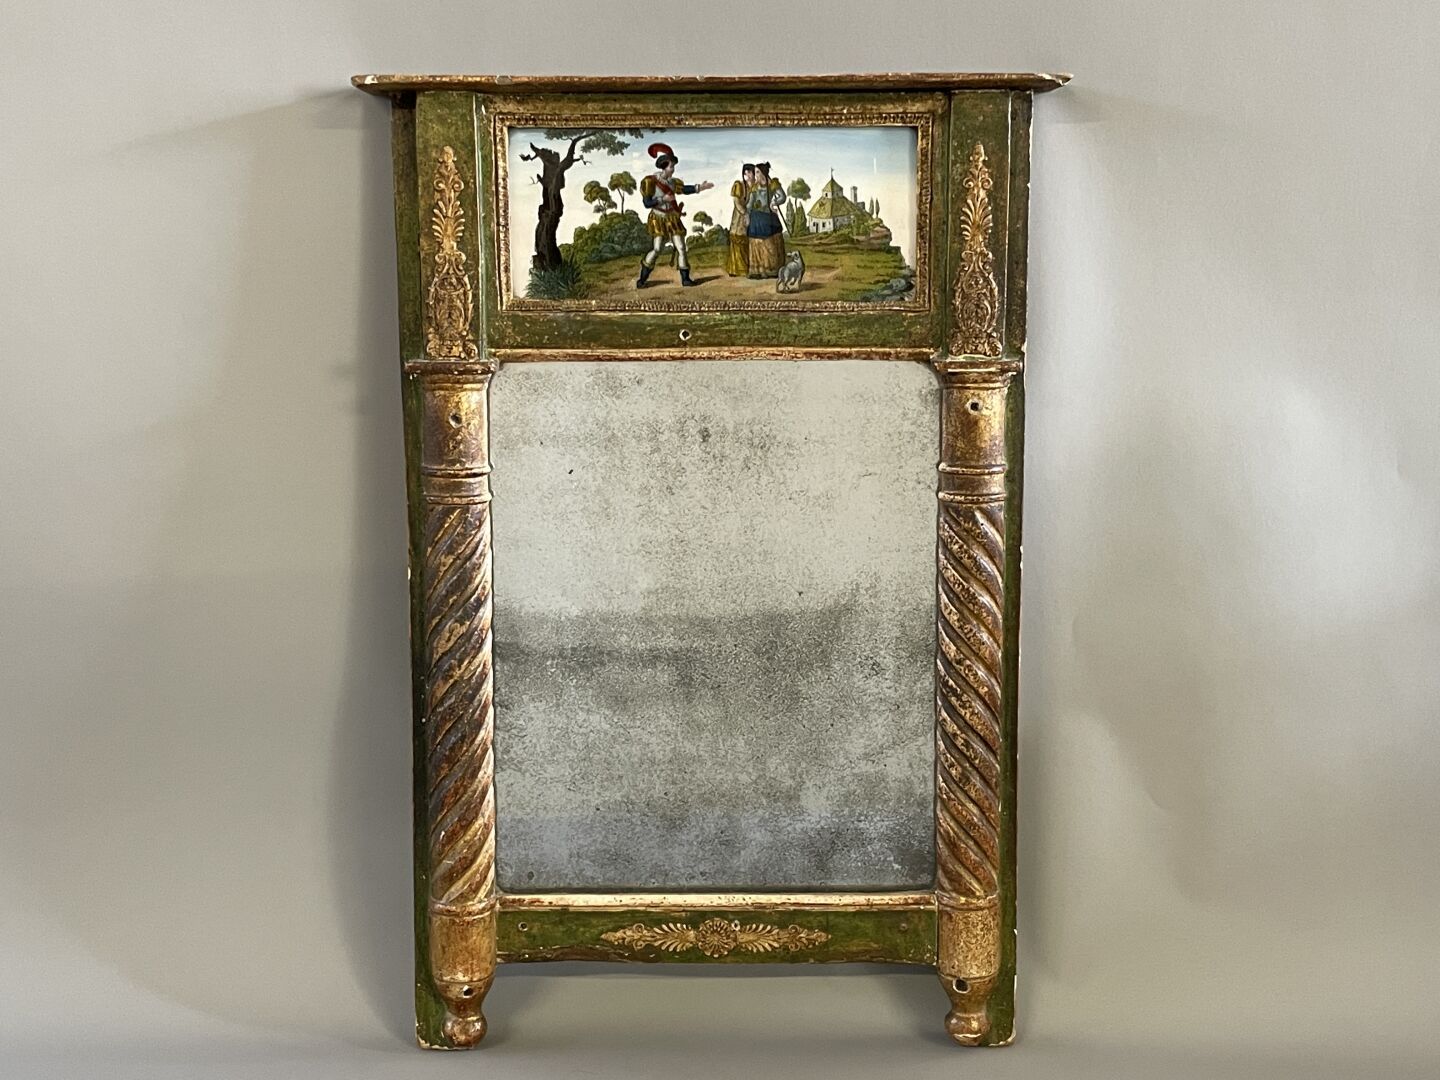 Null 小型壁炉镜，装饰有镀金和铜化的木头以及玻璃下的灰泥加兰特场景。

帝国时期

58 x 40 cm